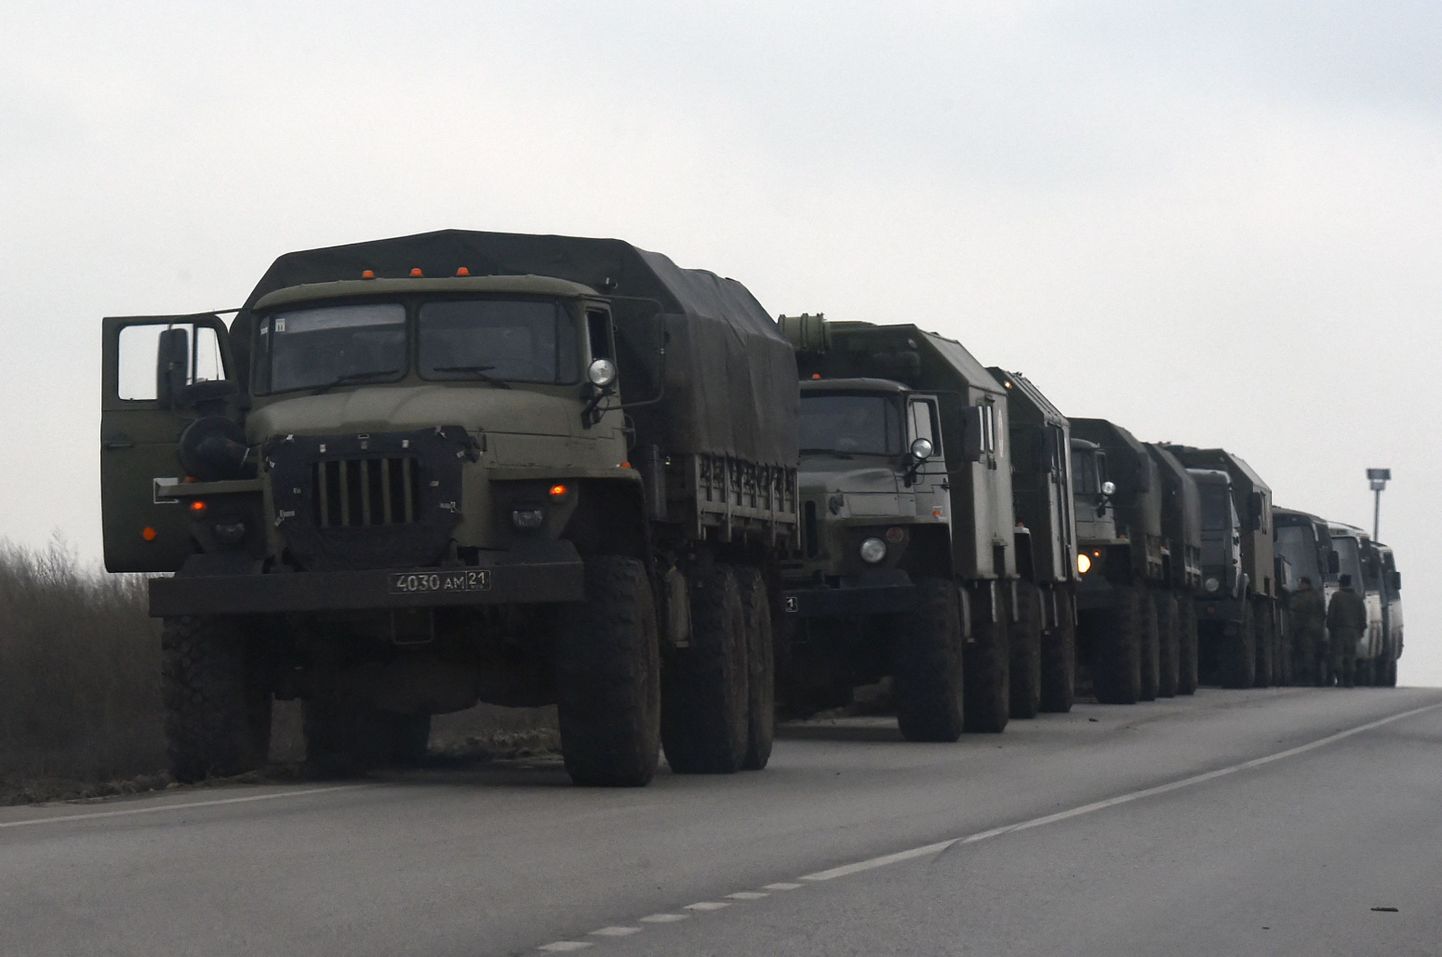 Vene sõjamasinad liikumas Ukraina poole 23. veebruaril 2022. a.